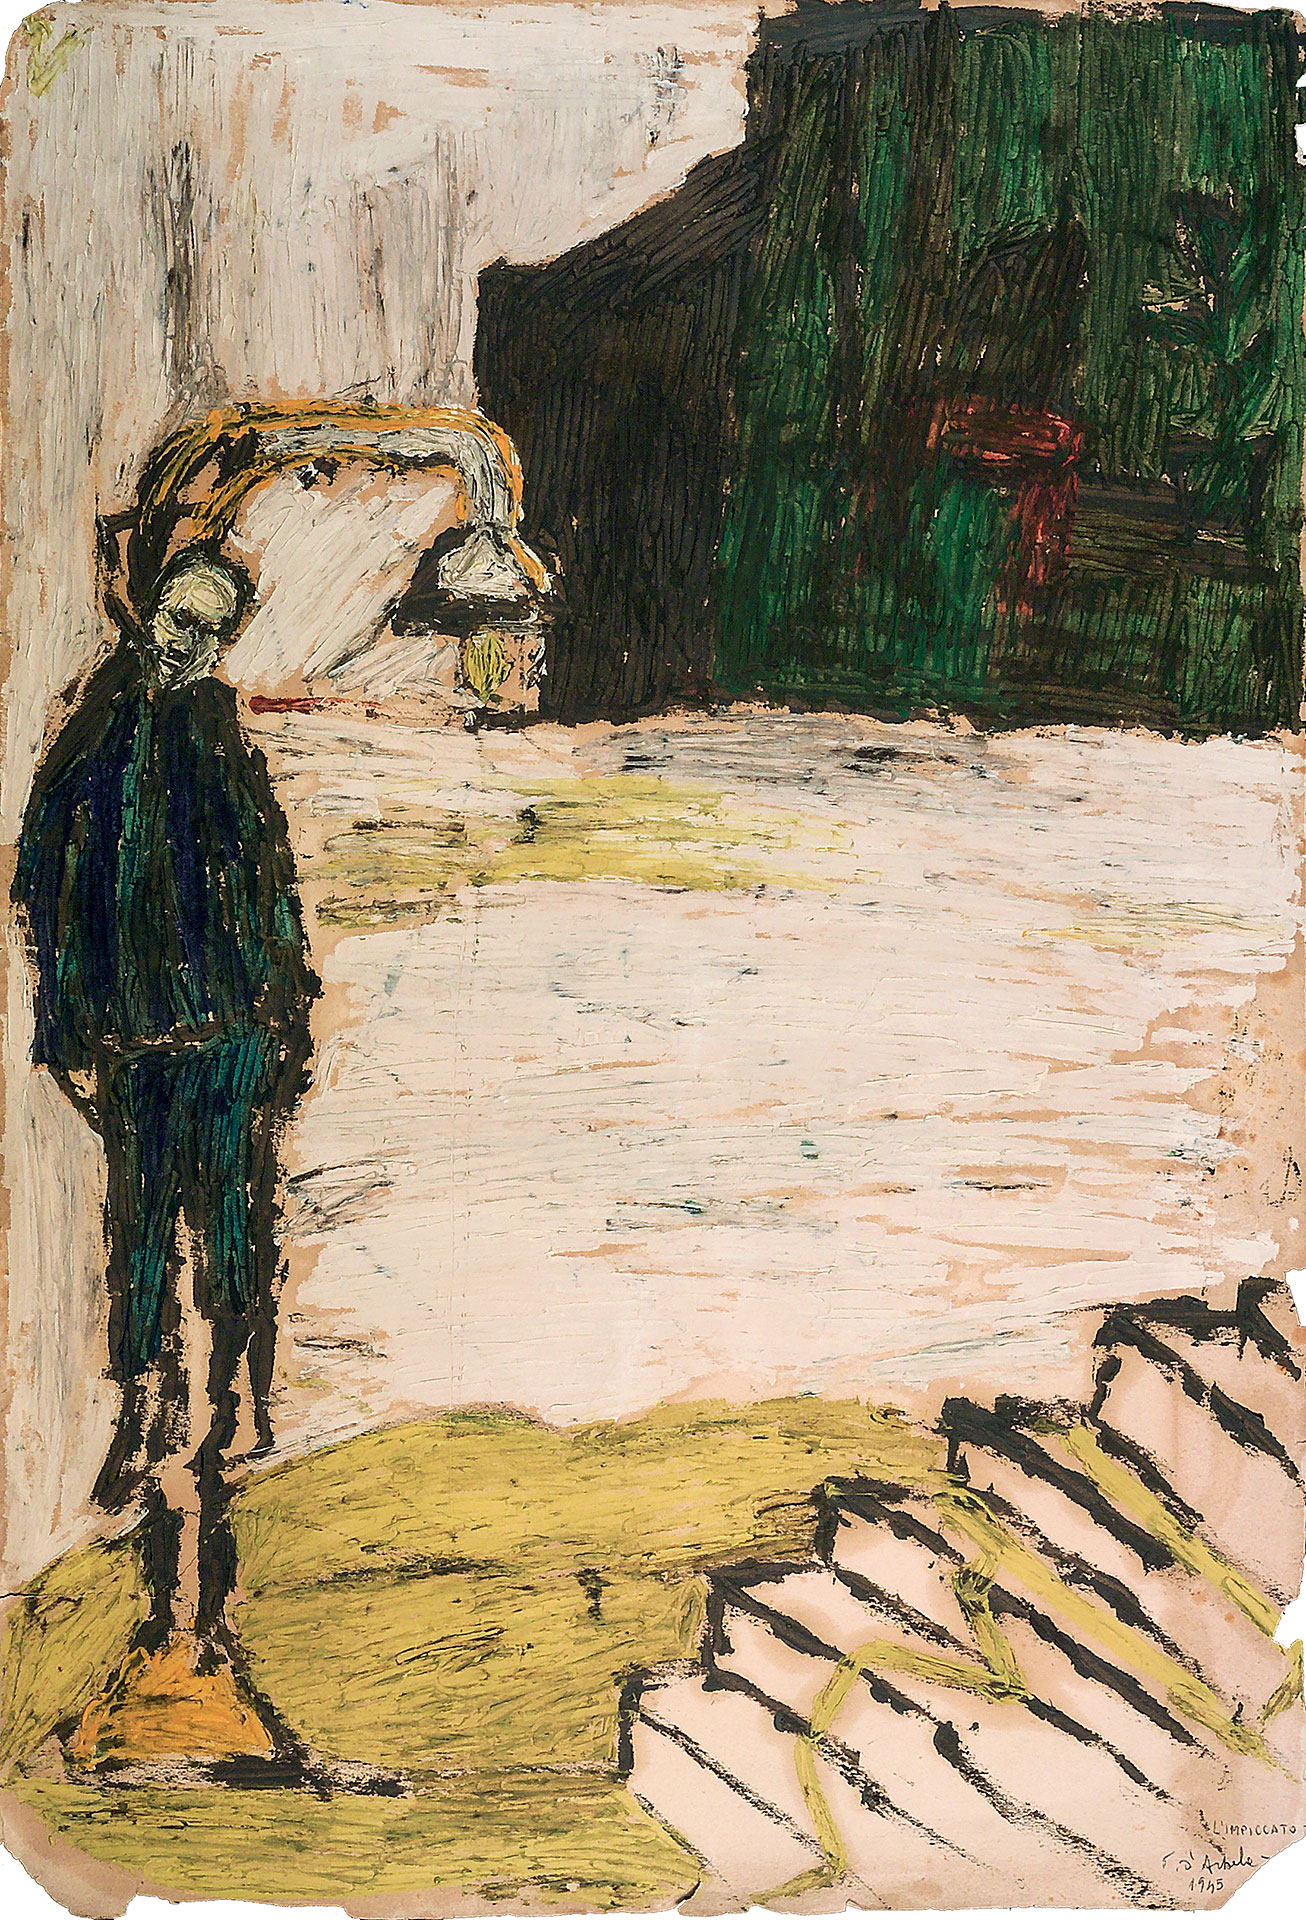 Dipinto ad olio che raffigura un uomo impiccato